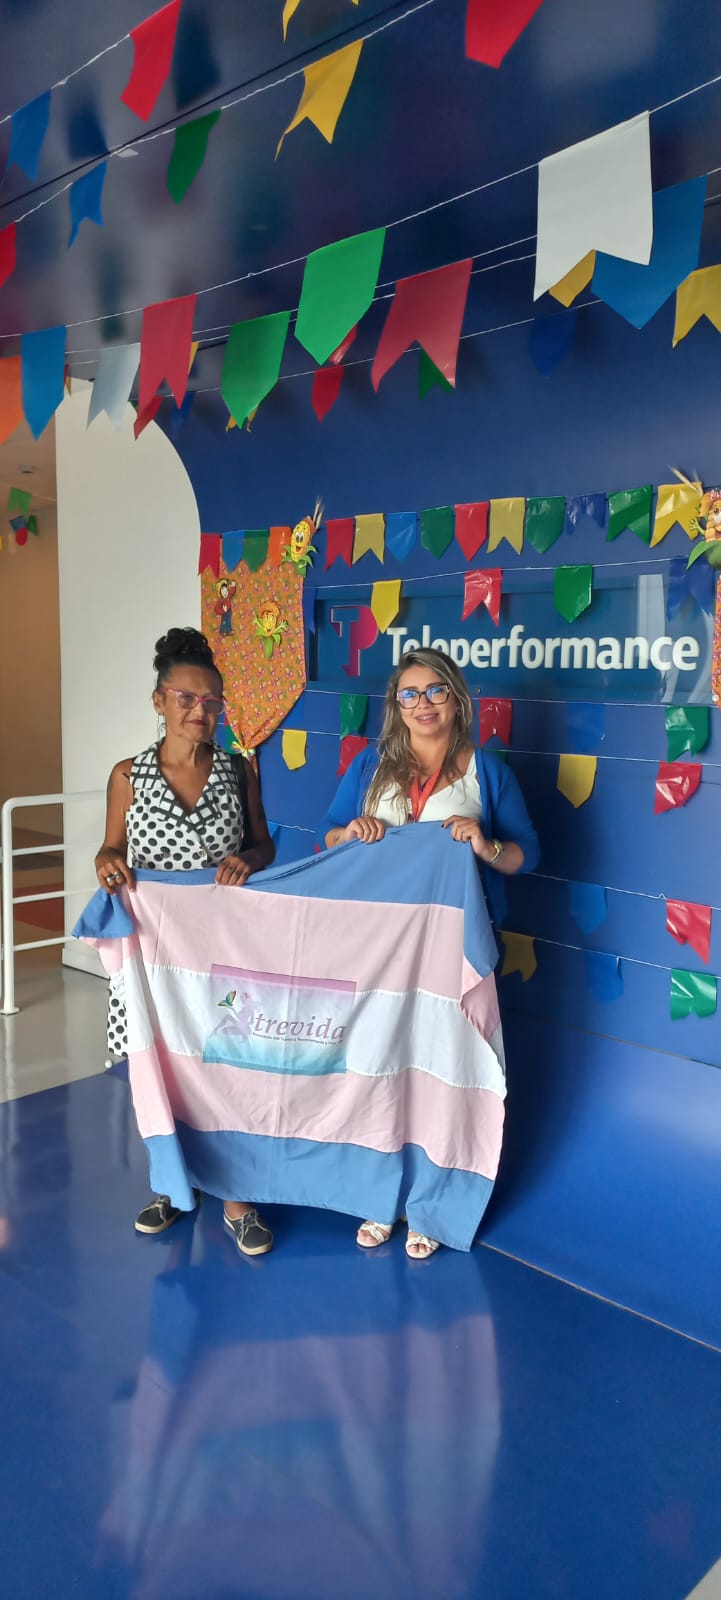 ONG ATREVIDA-RN e Teleperformance dialogam sobre vagas de emprego para pessoas Trans